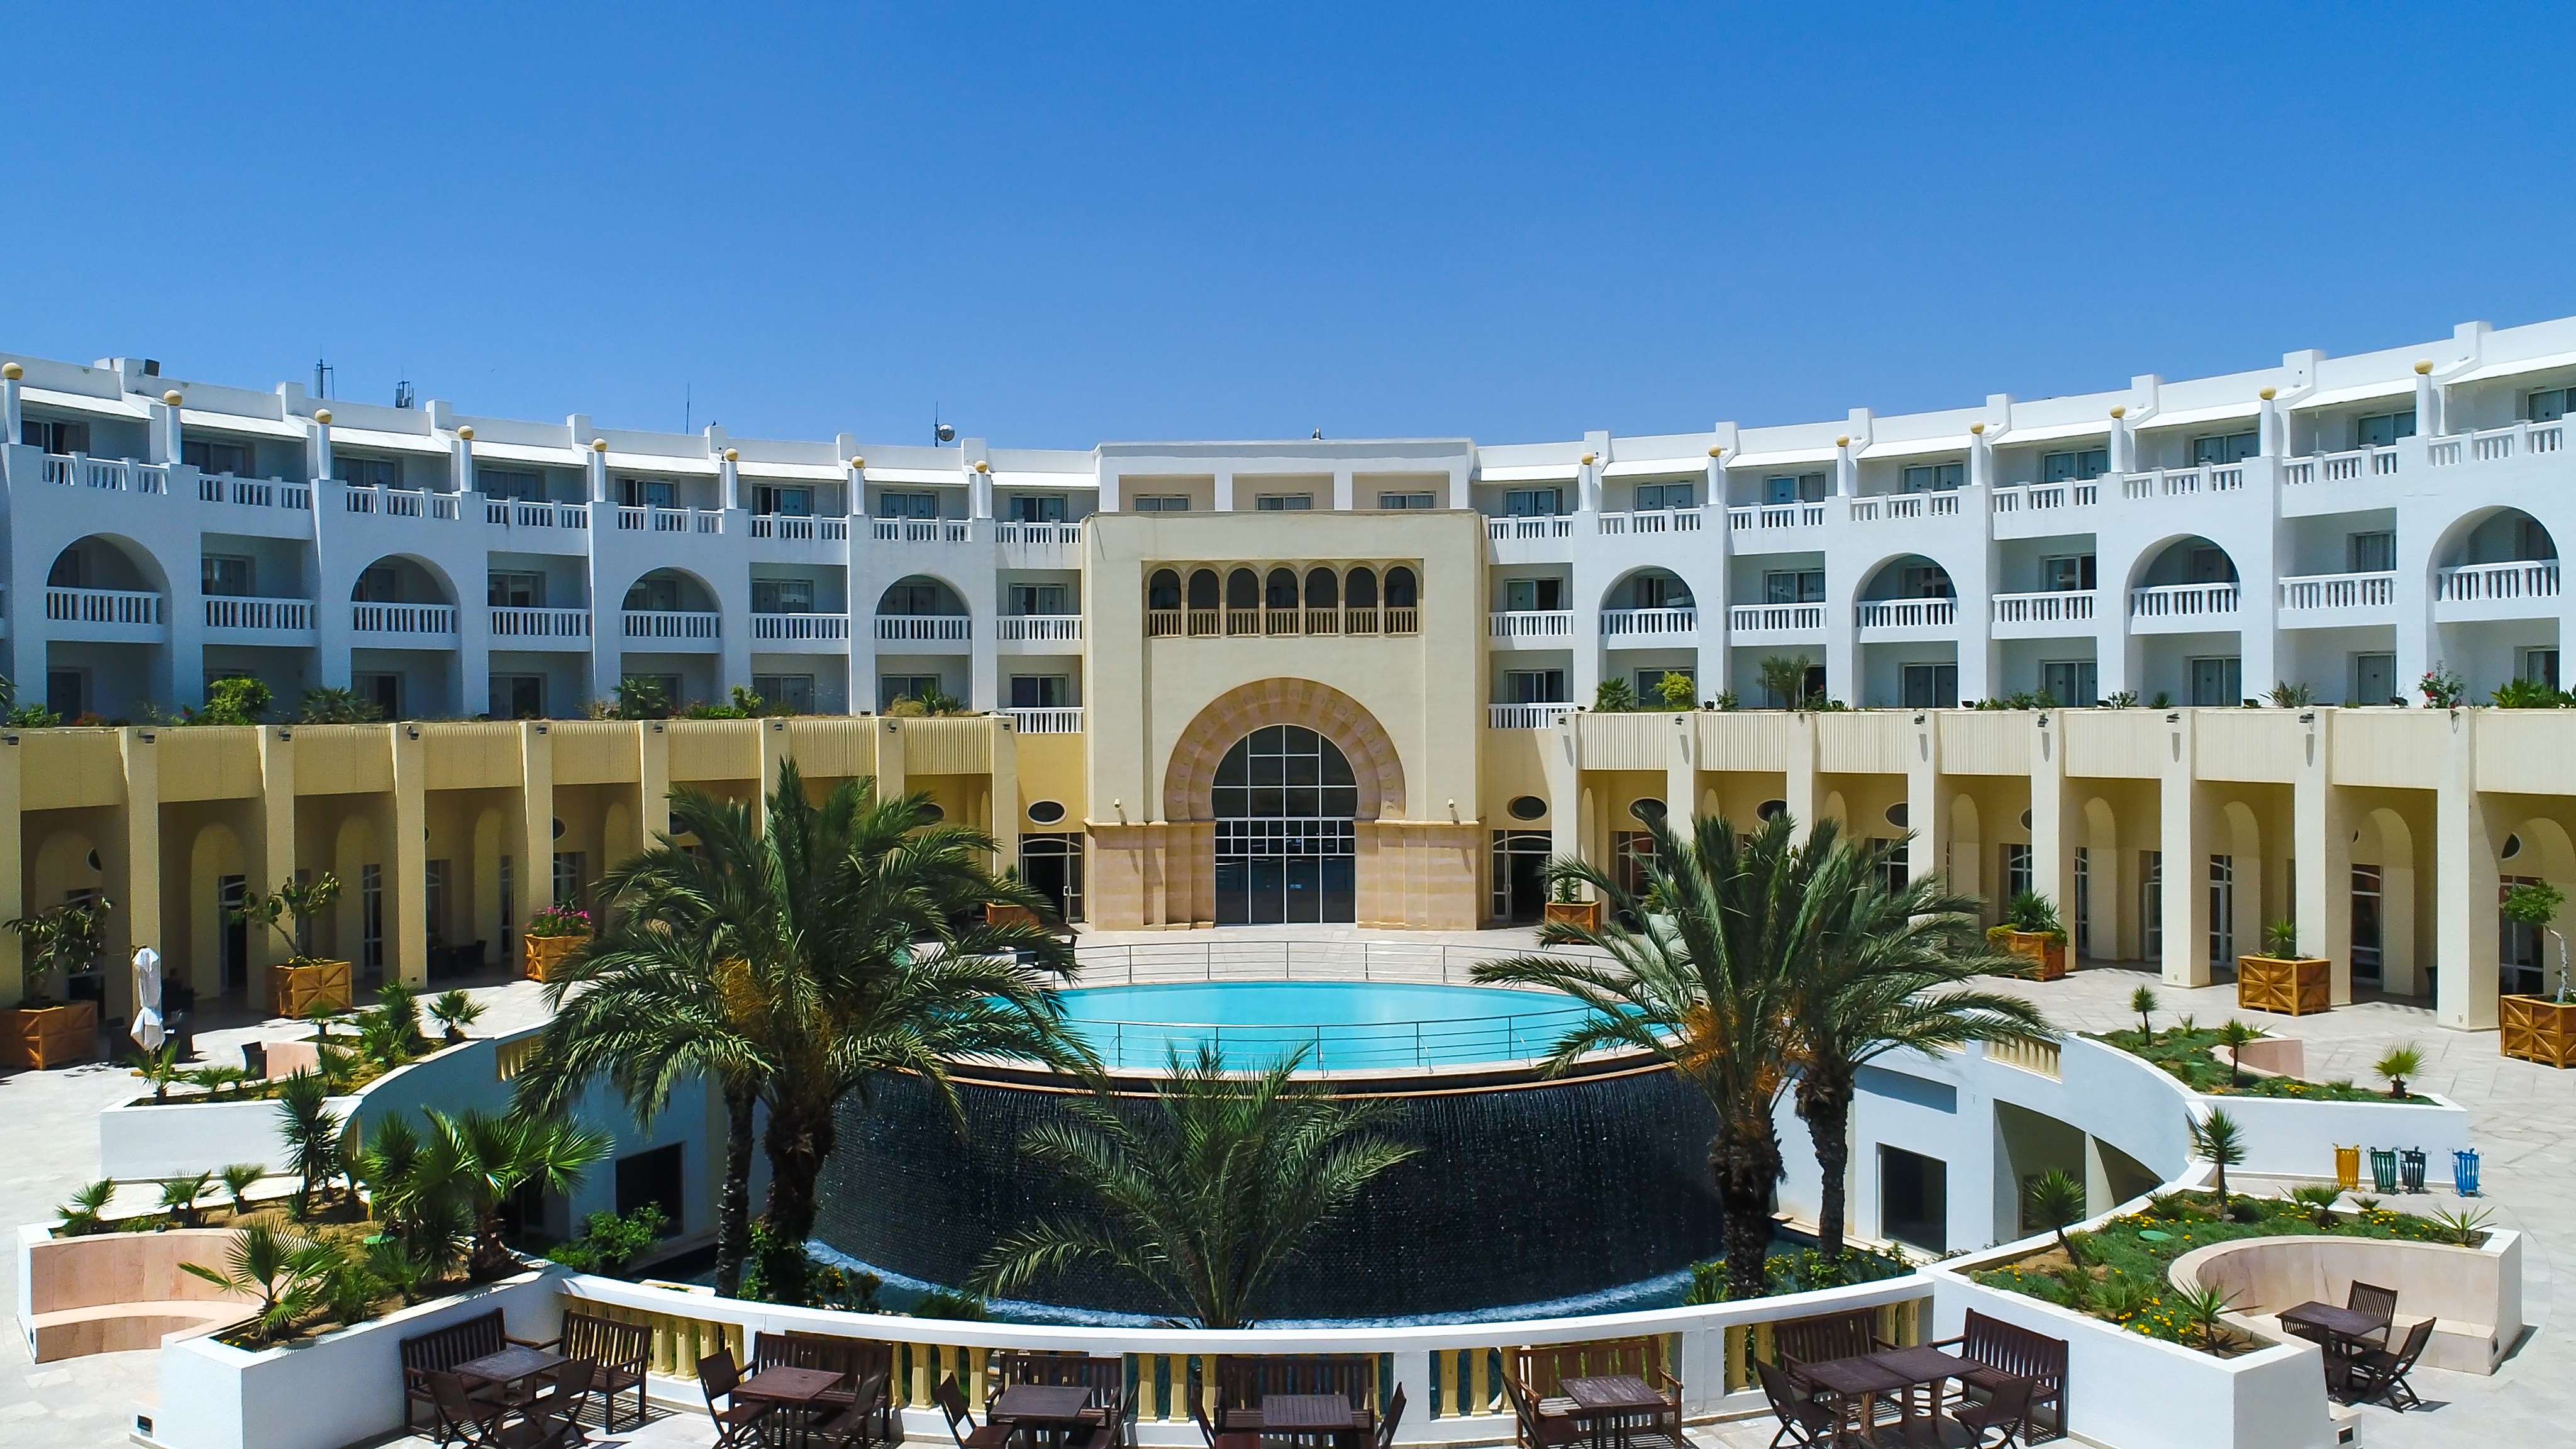 Départ demain Tunisie Hammamet Hôtel Medina Solaria et Thalasso 5*- cure thalasso incluse